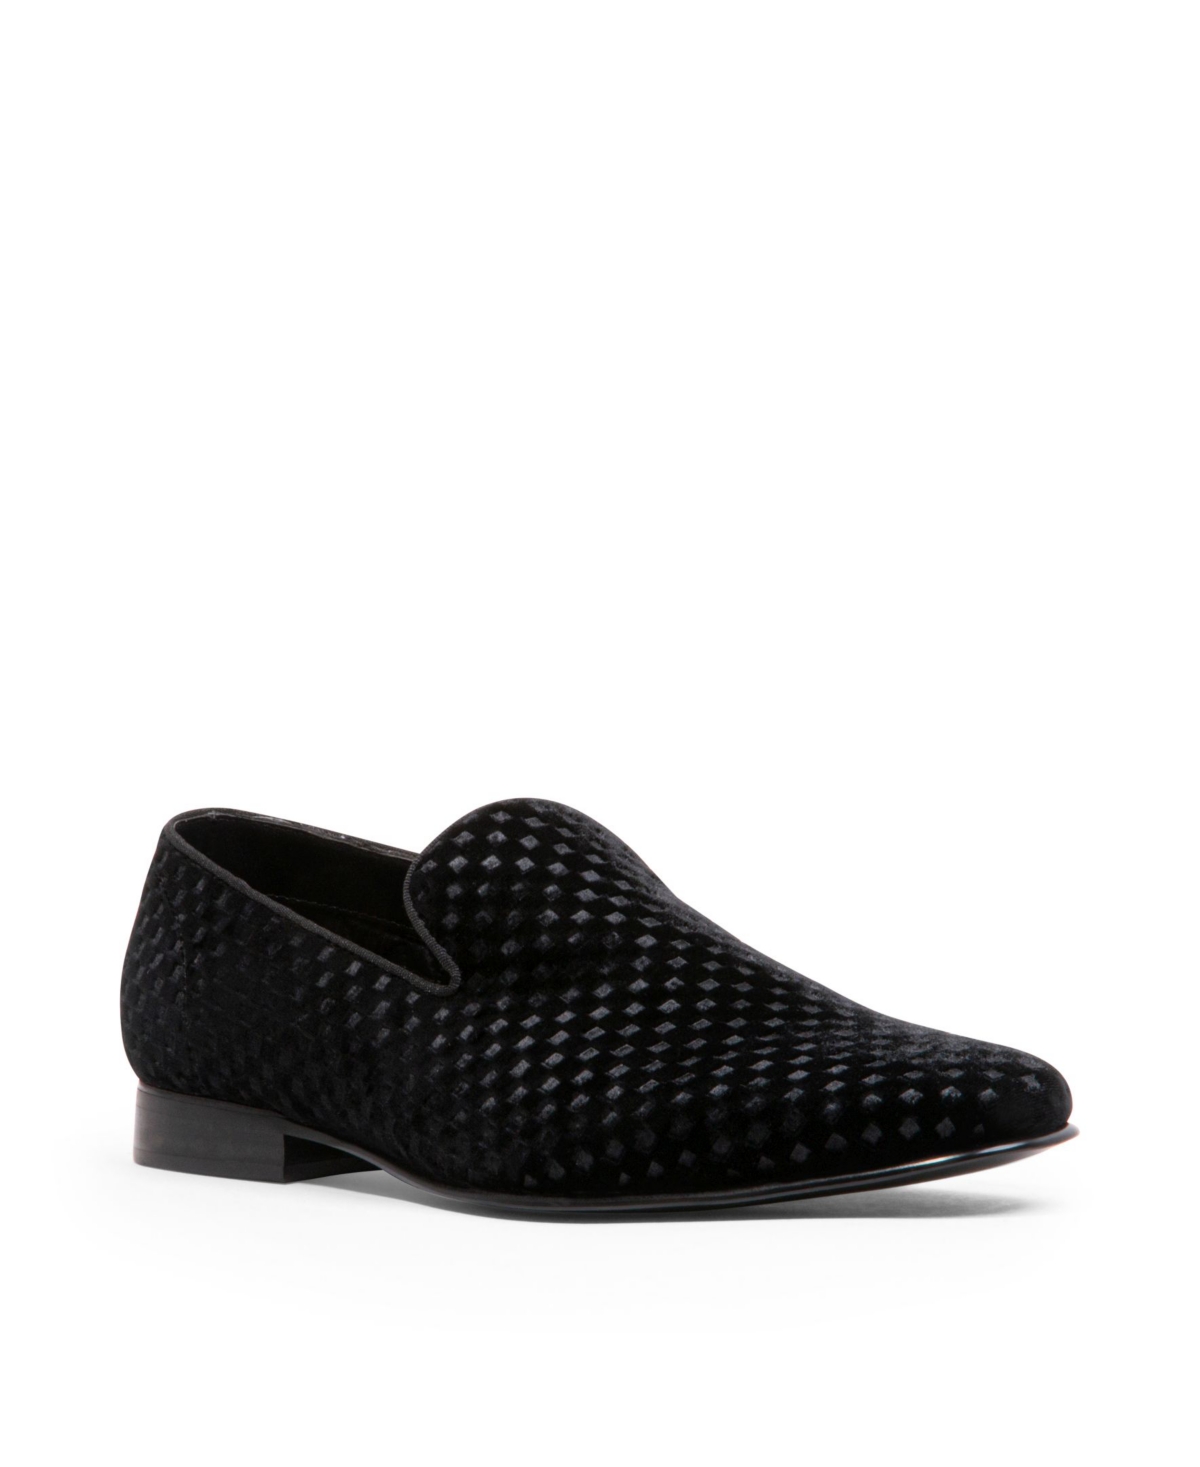 Men's Lifted Slip-On Loafer Shoes - Black Velvet